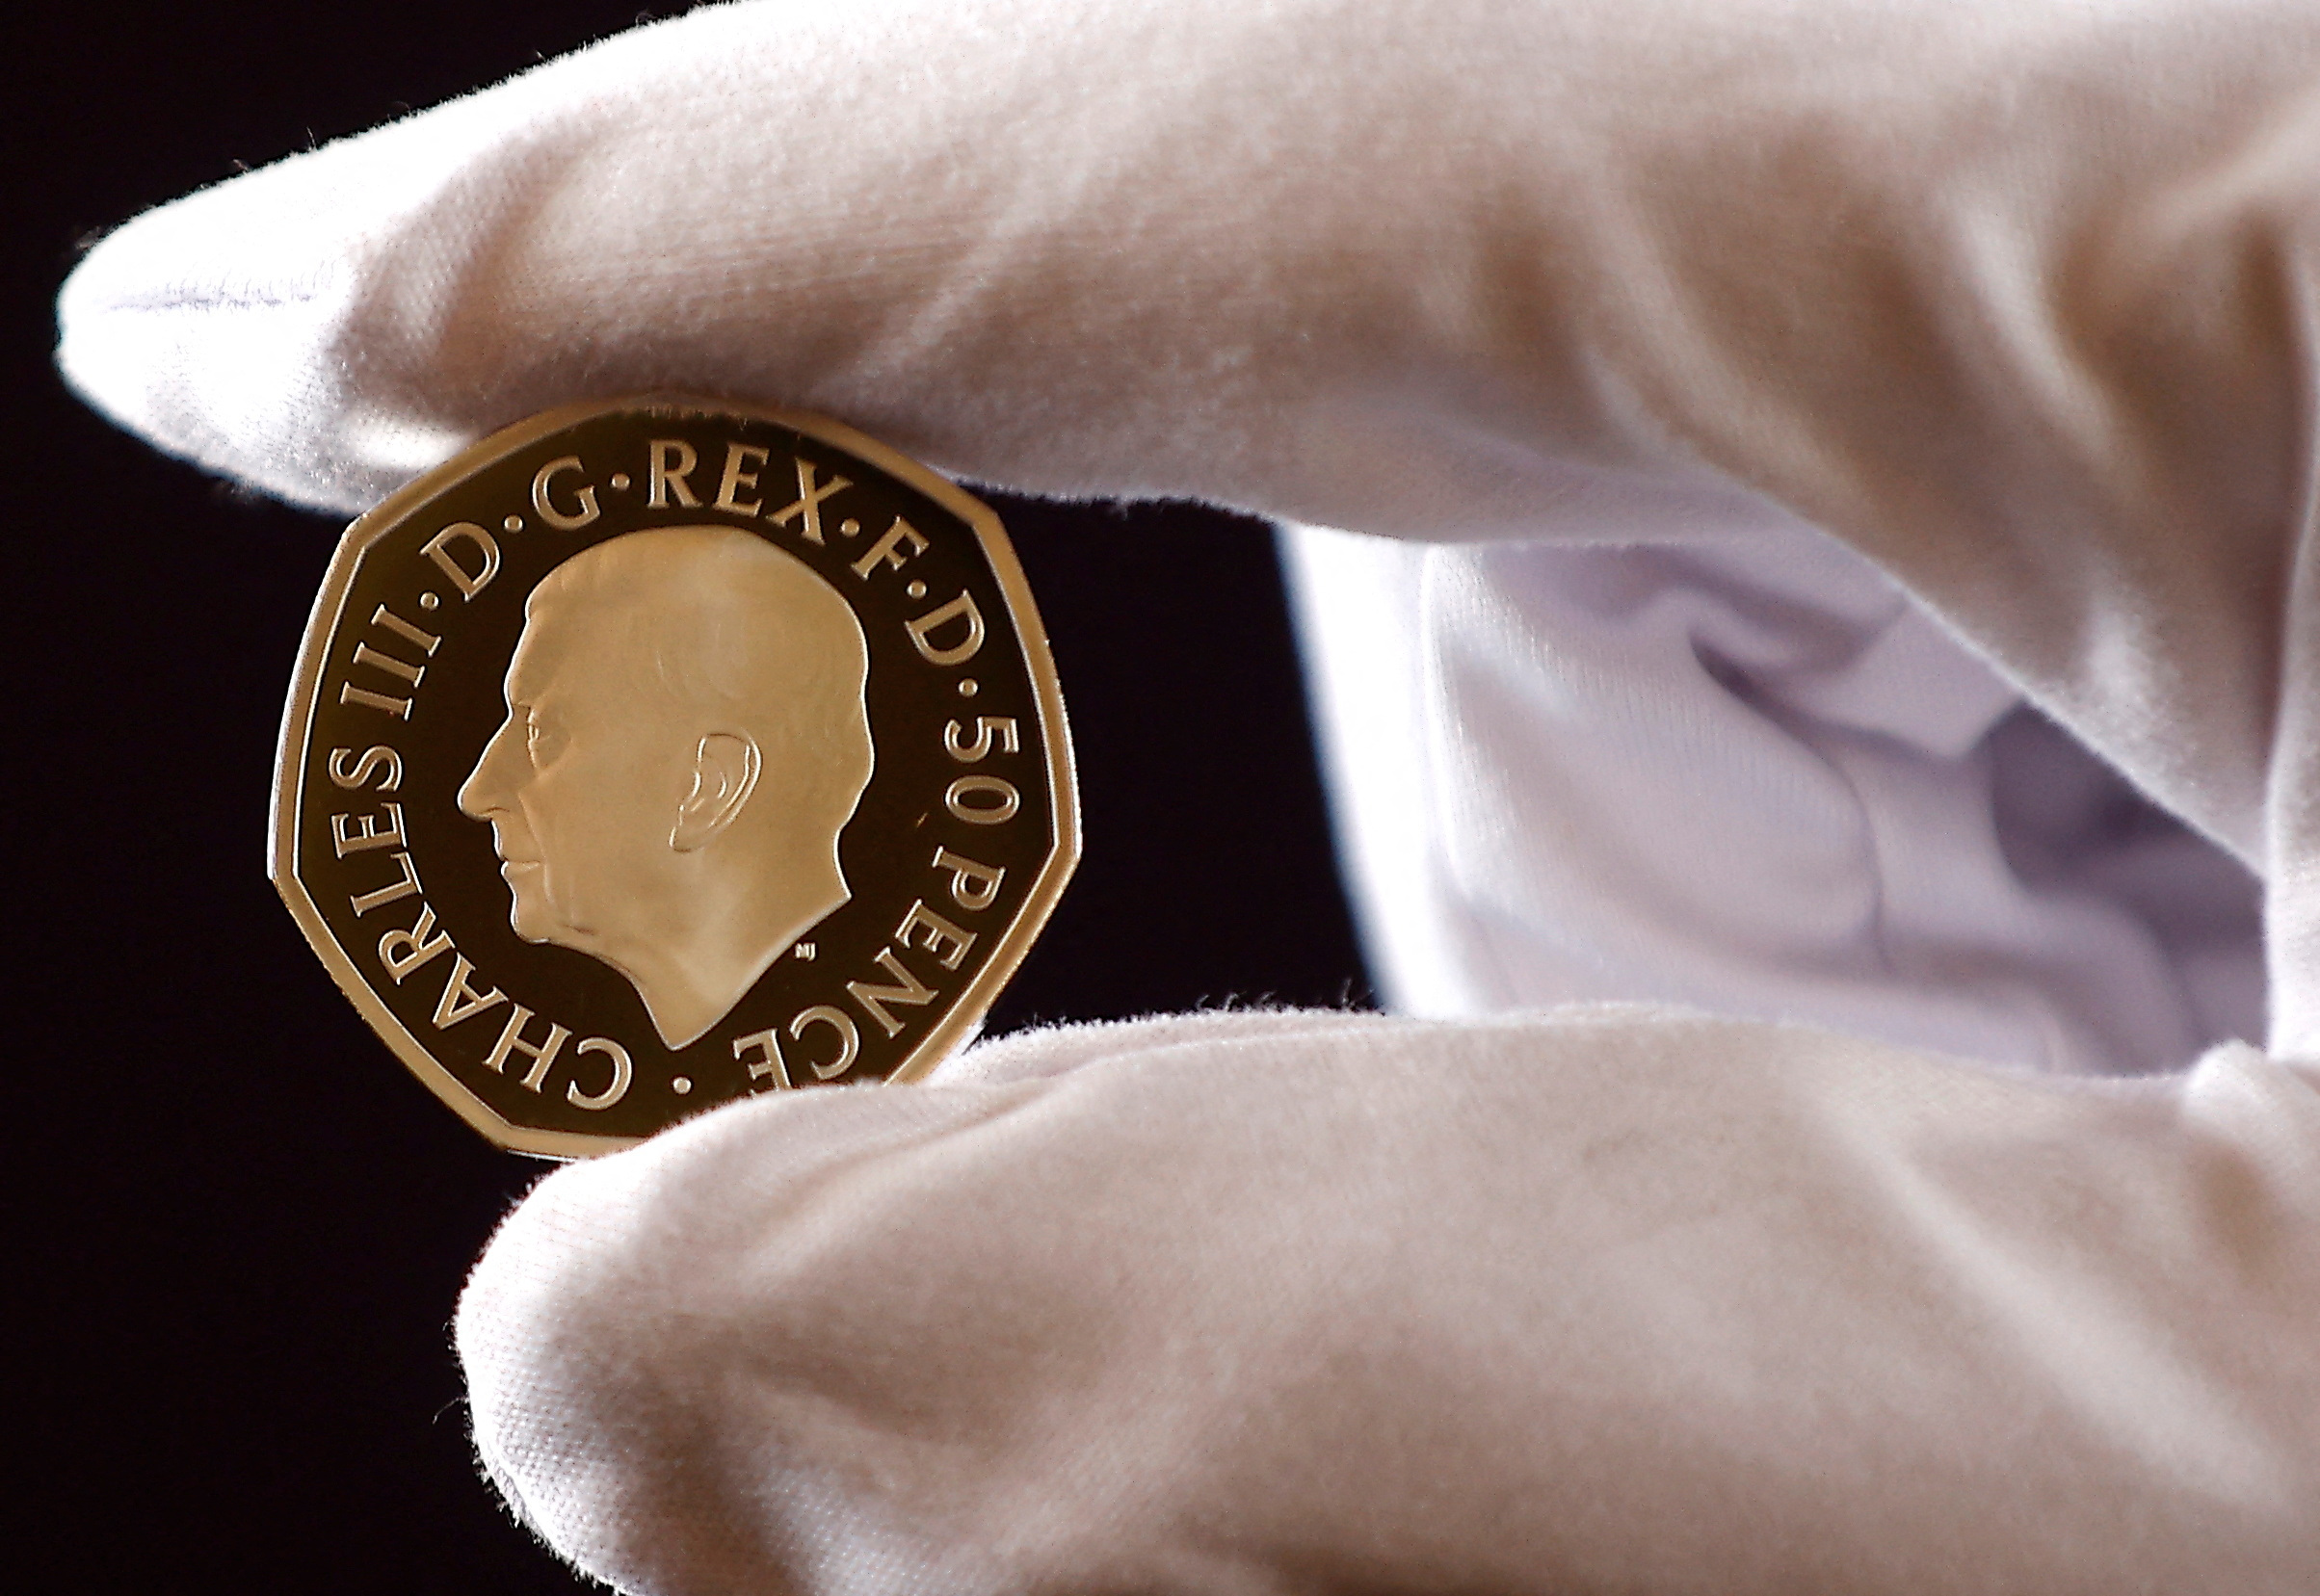 Βασιλιάς Κάρολος: Το πορτρέτο του Βρετανού μονάρχη στα νέα νομίσματα [φωτογραφίες]